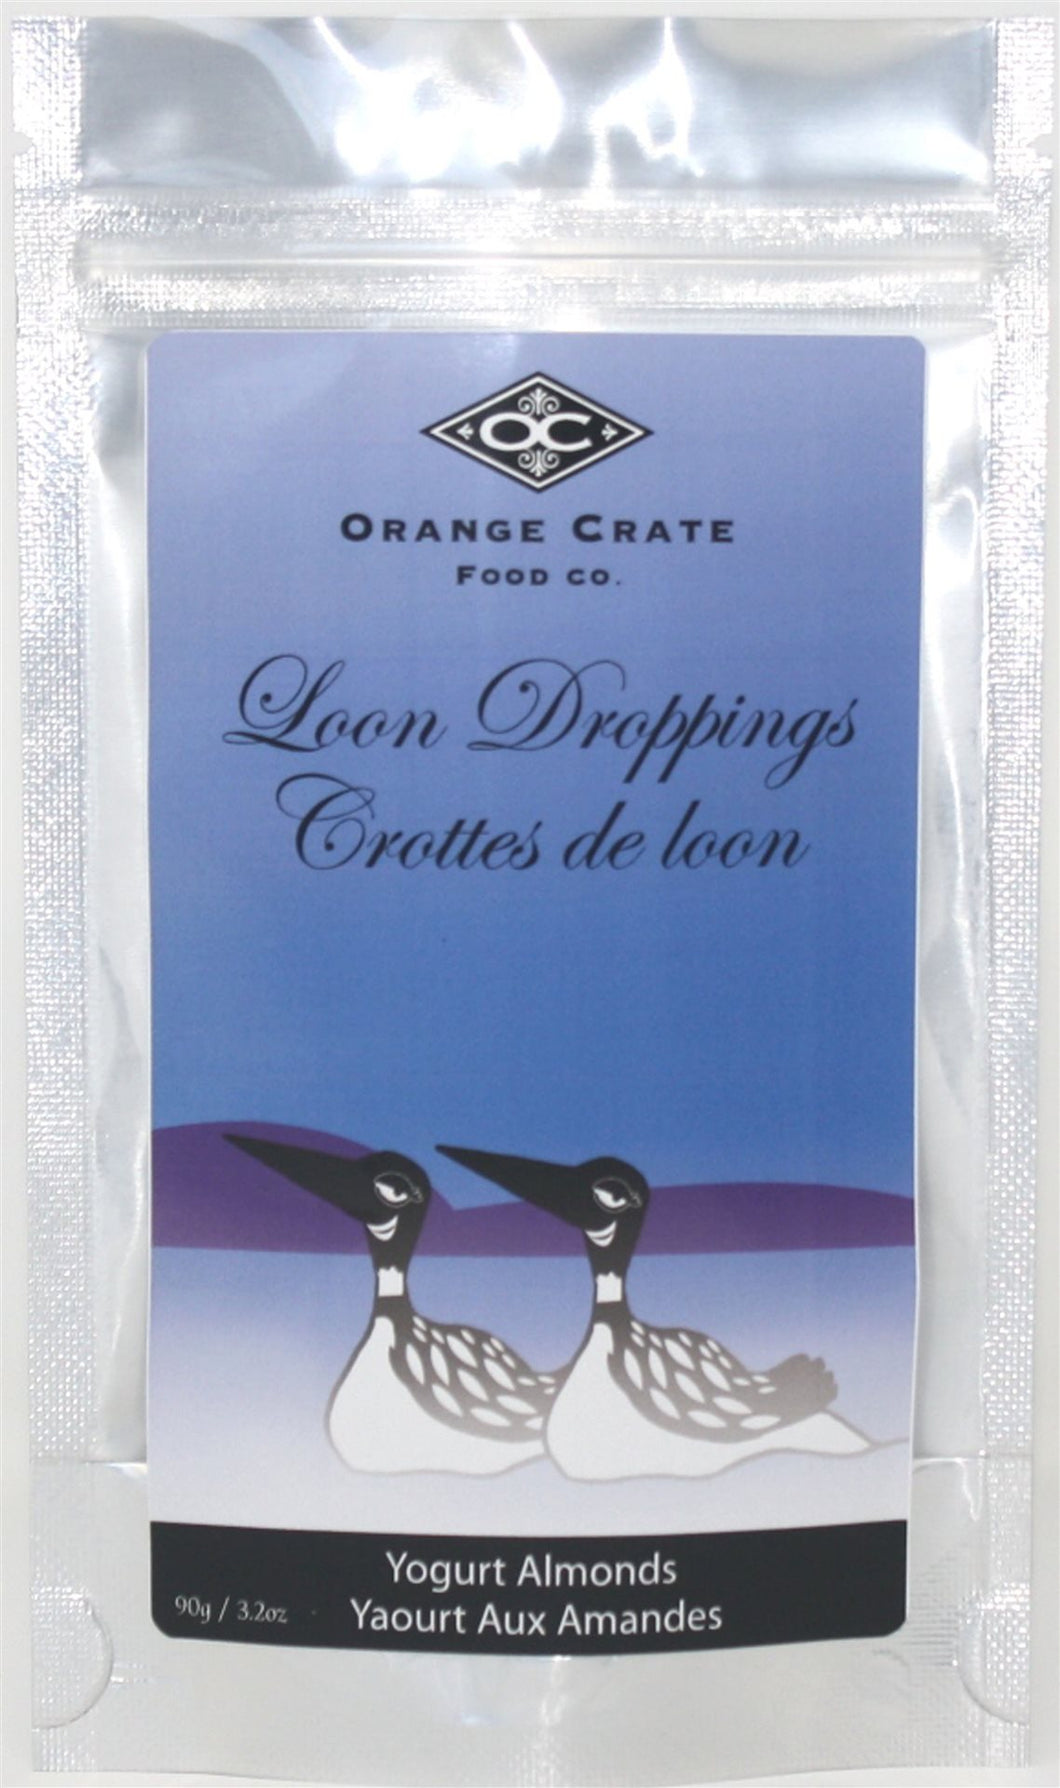 Loon Droppings